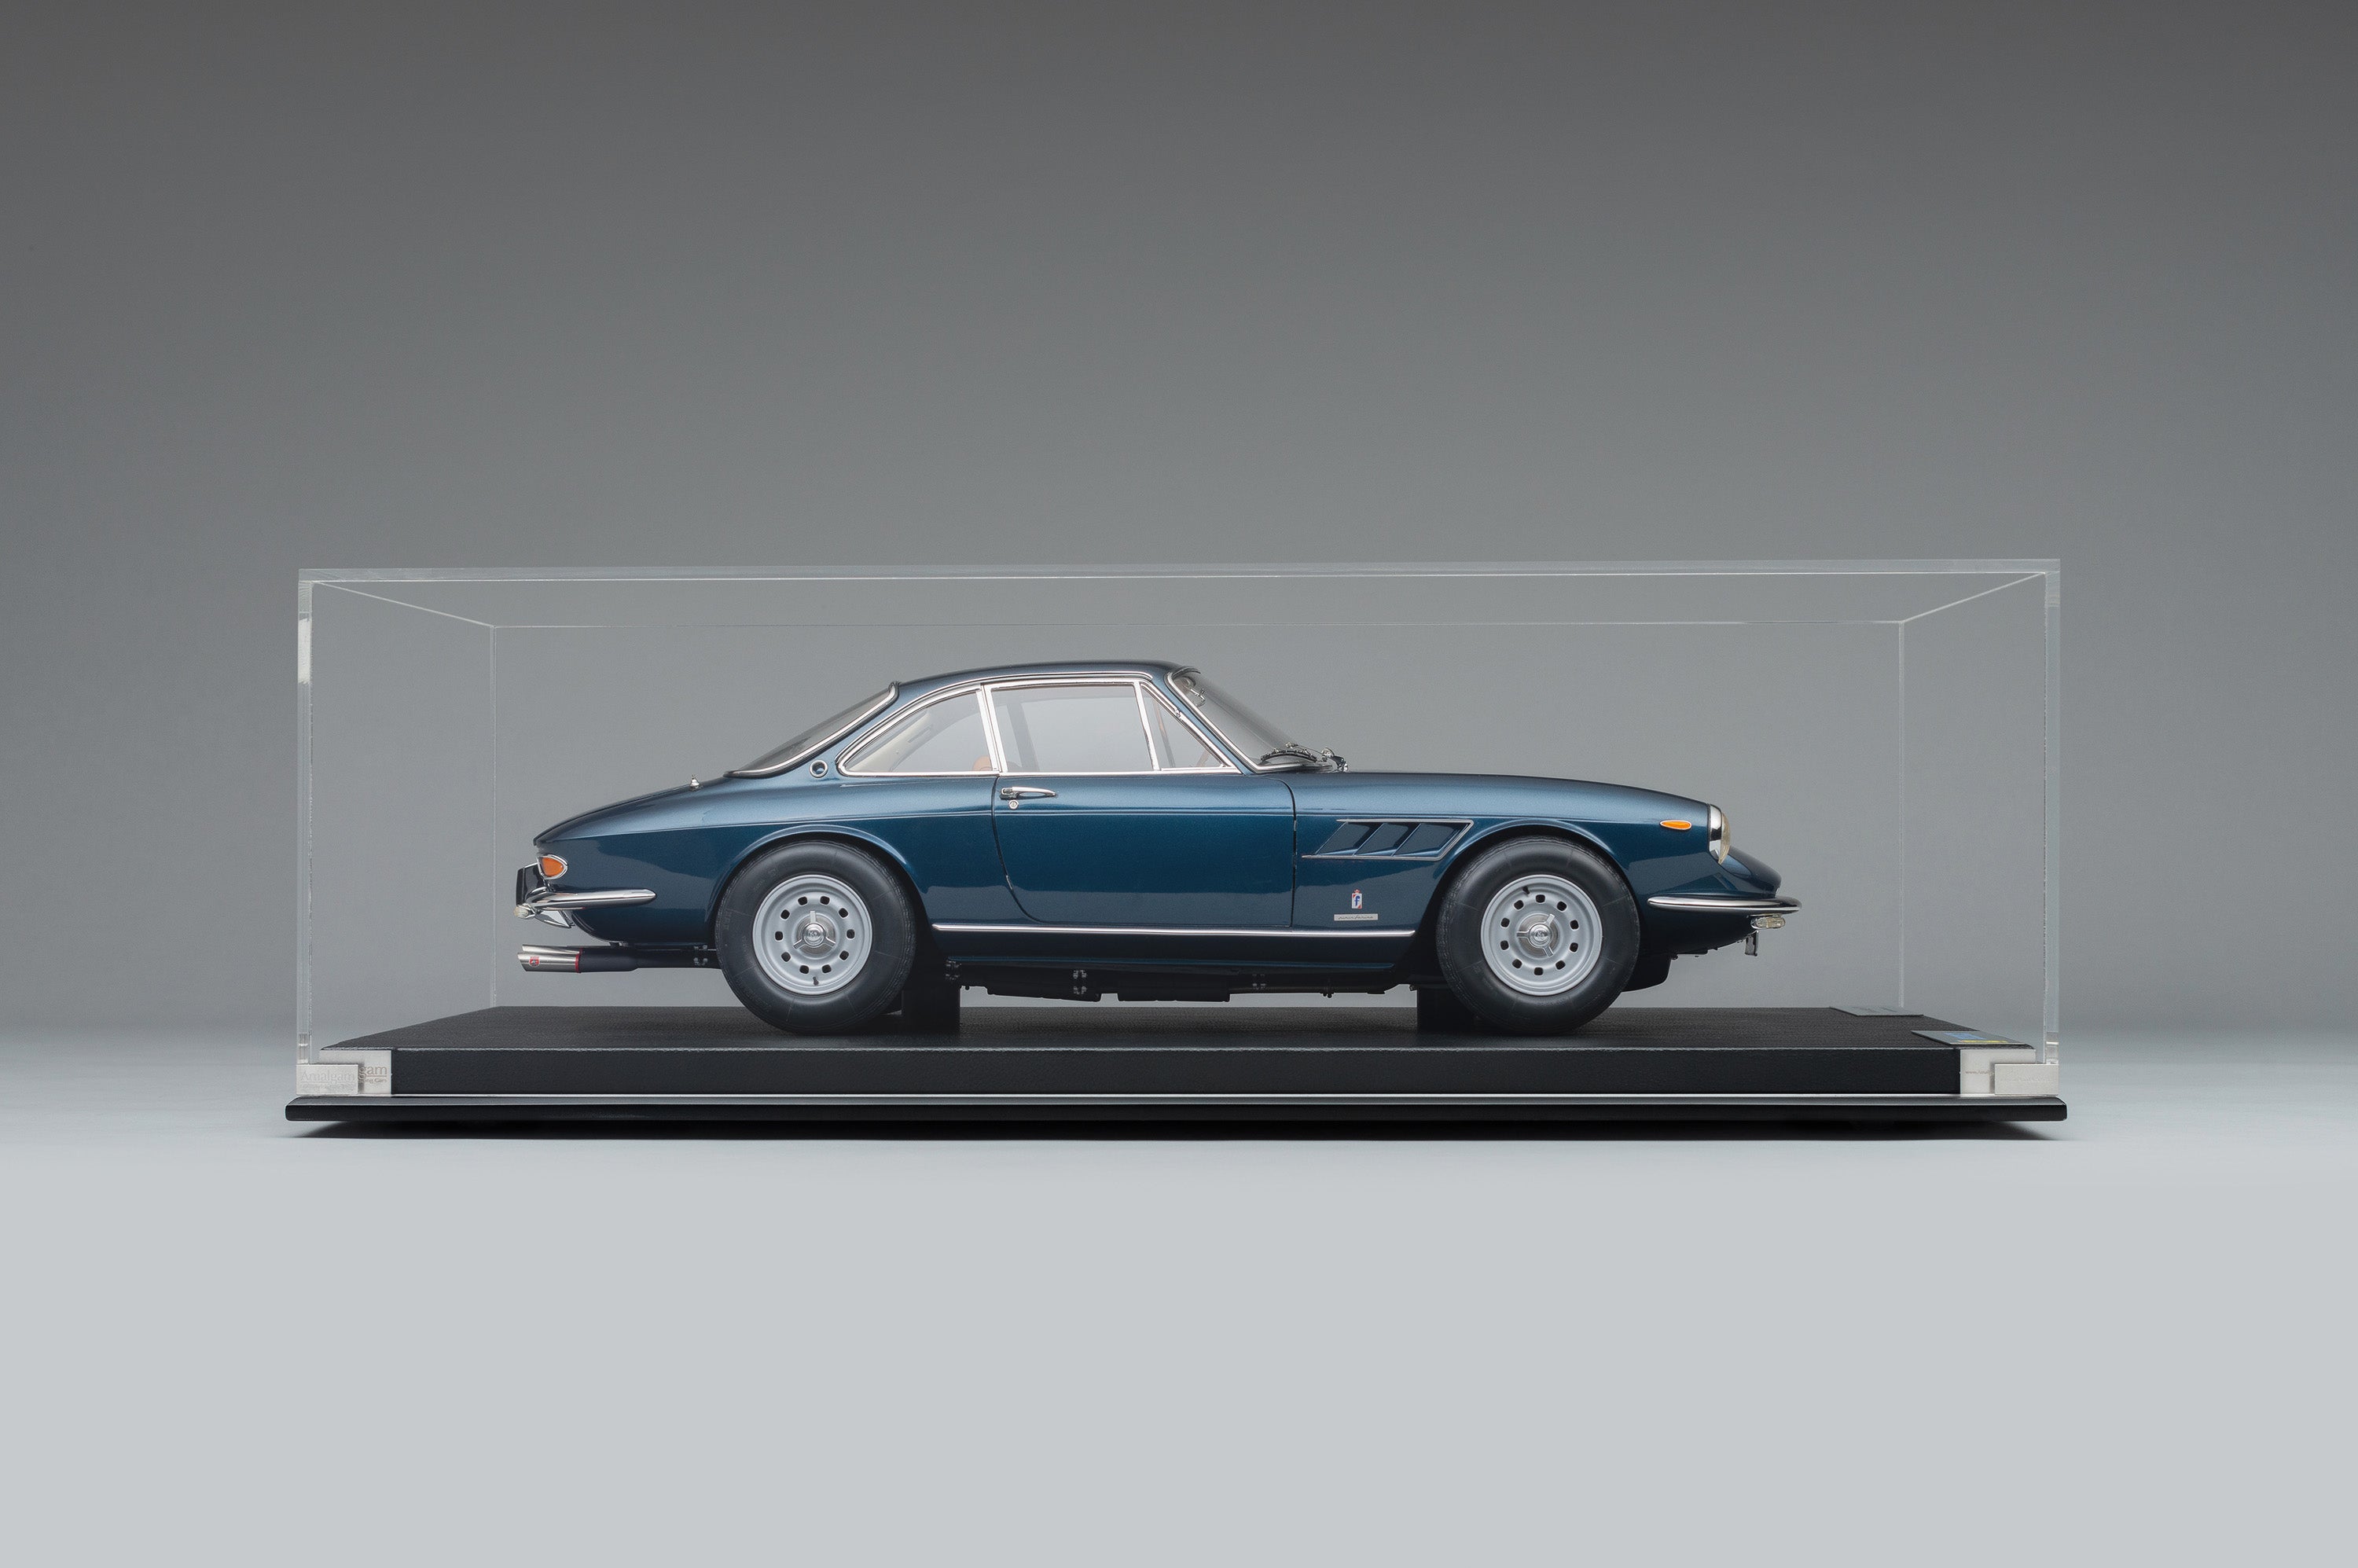 Ferrari 330 GTC (1966) – Amalgam Collection